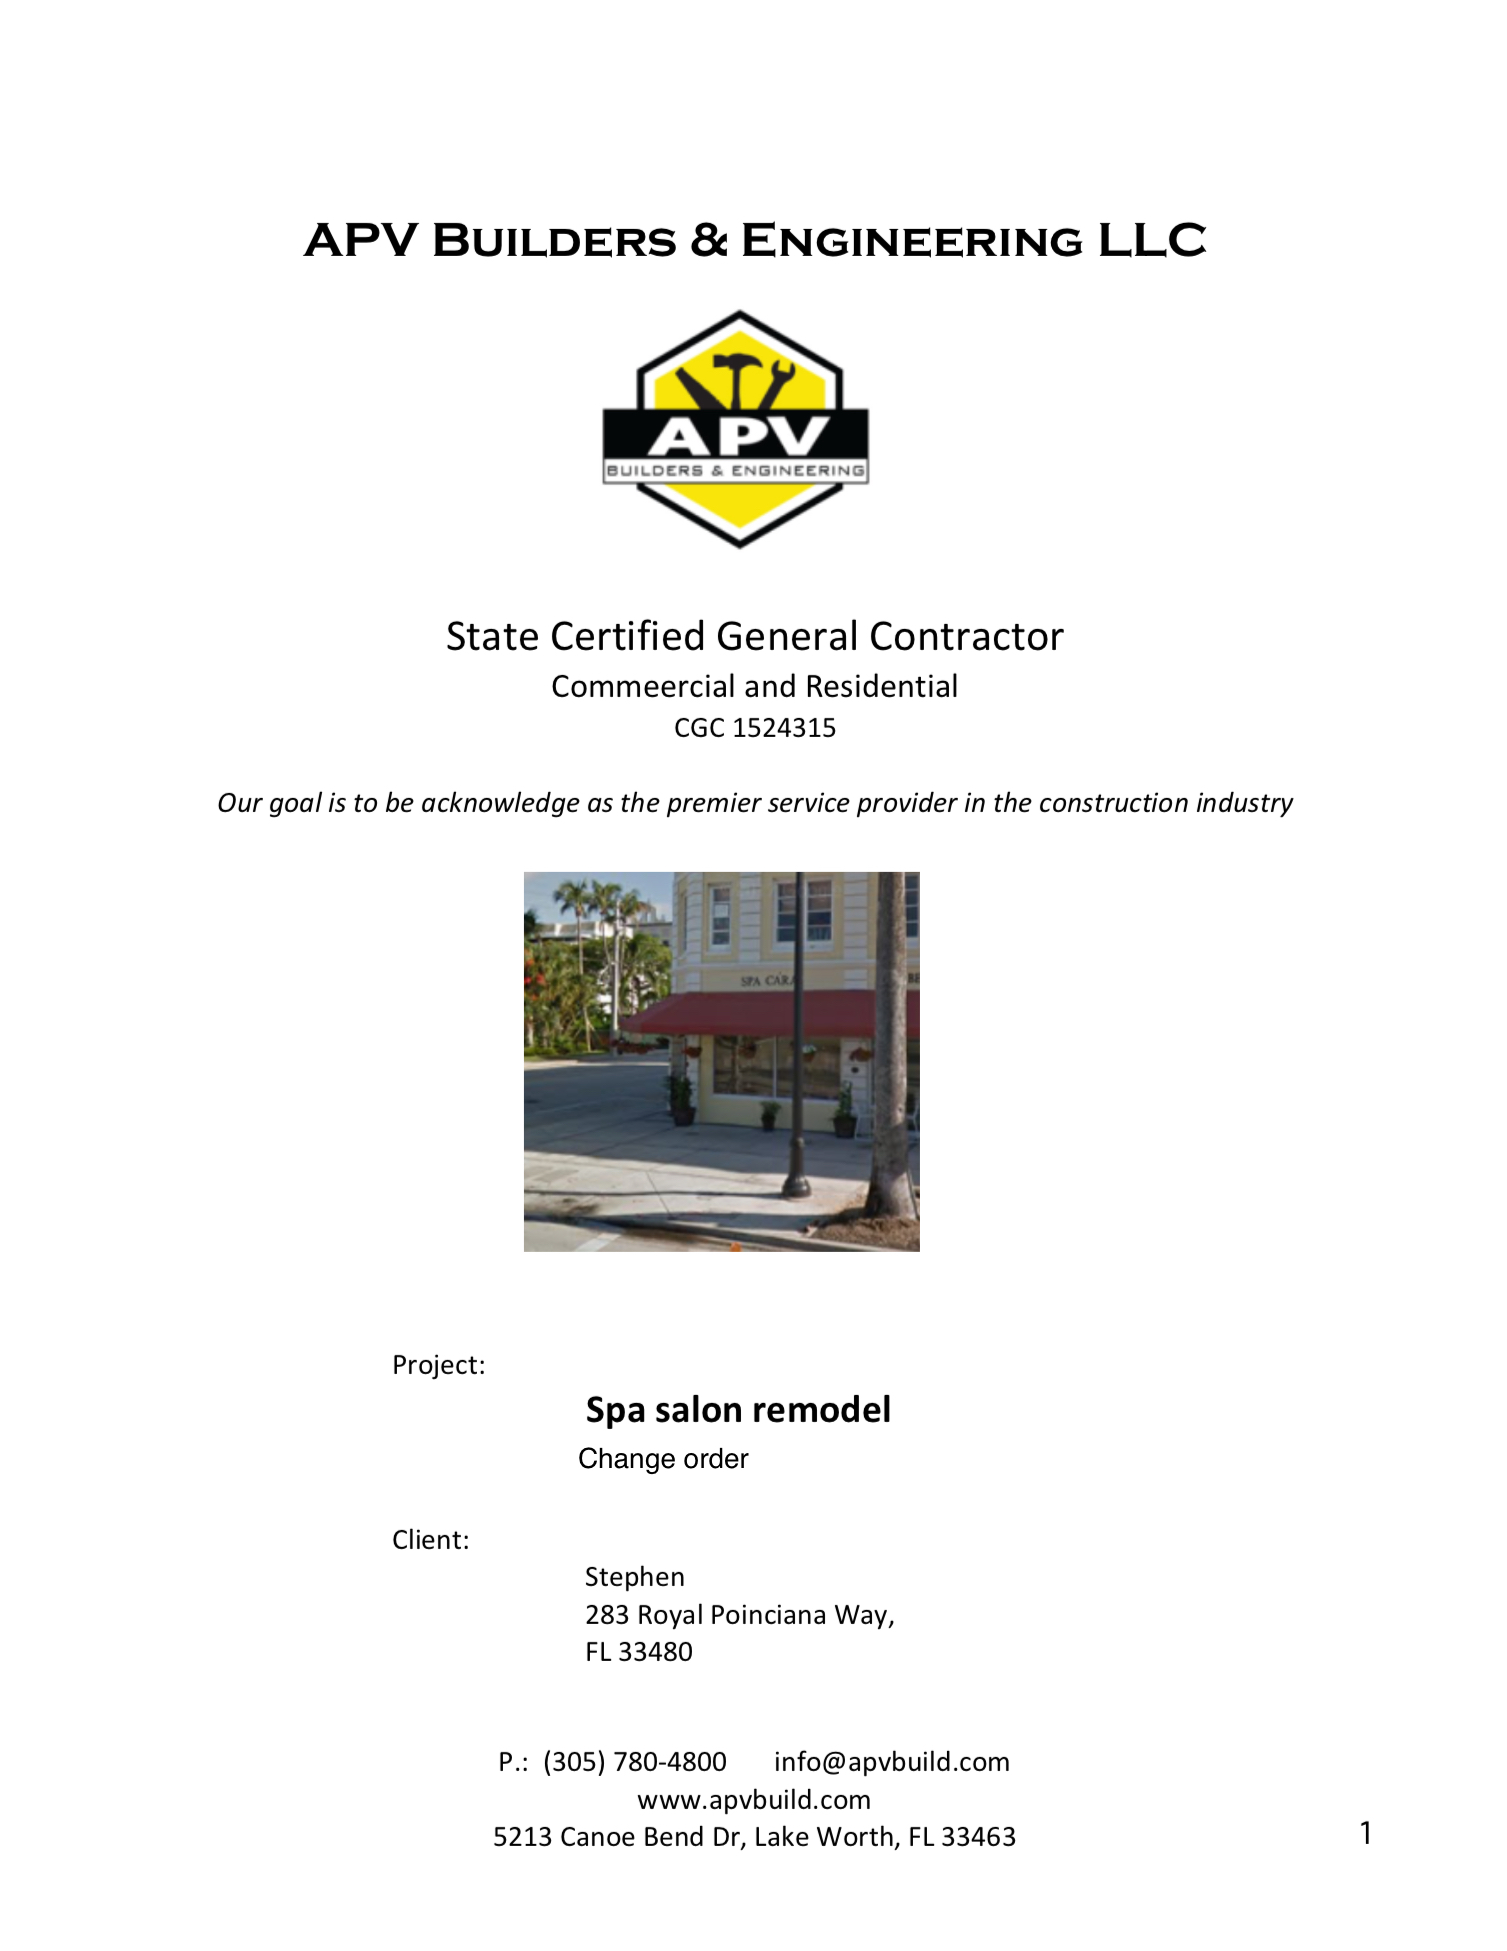 APV Builders & Engineering, LLC Logo